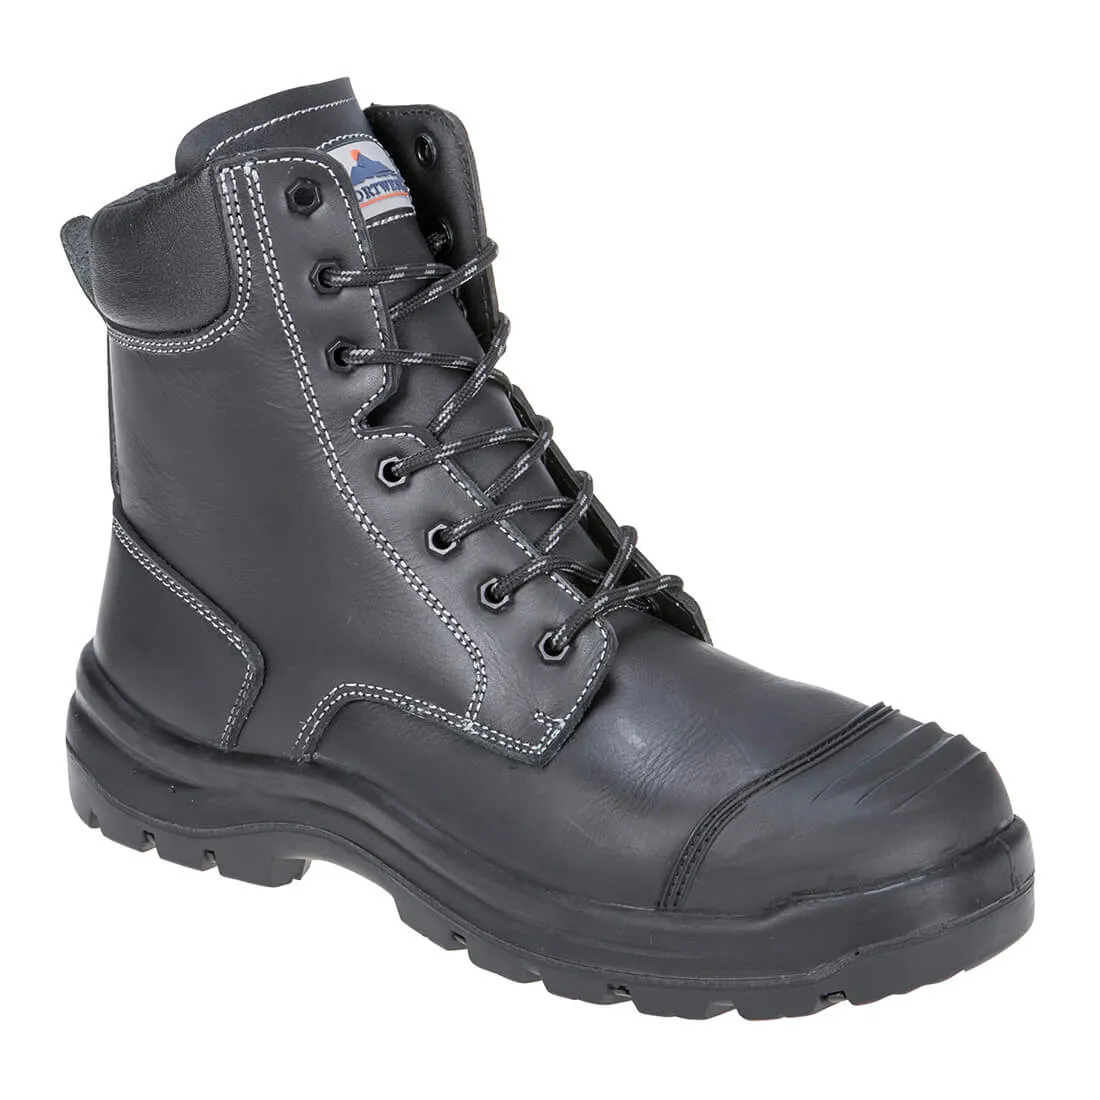 Portwest Pro Mens Eden S3 Safety Boots - Black, Size 10